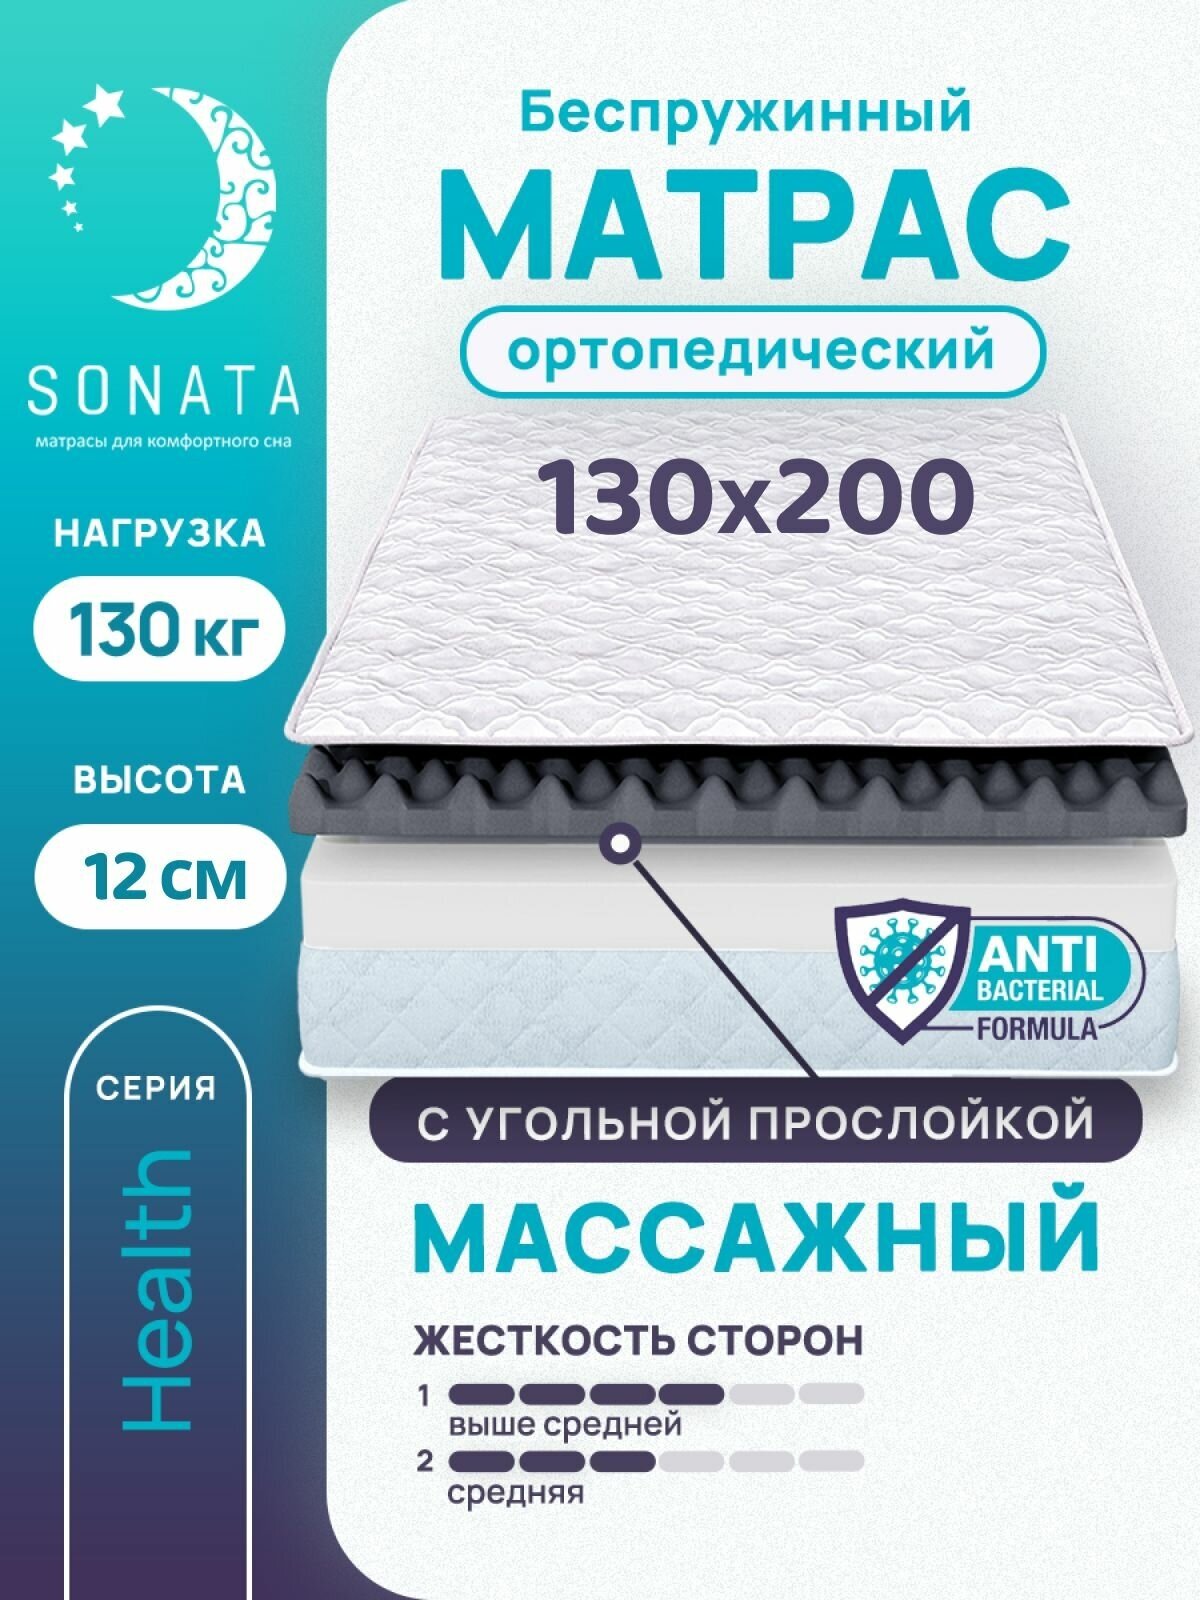 Матрас 130х200 см SONATA, беспружинный, односпальный, матрац для кровати, высота 12см, с массажным эффектом